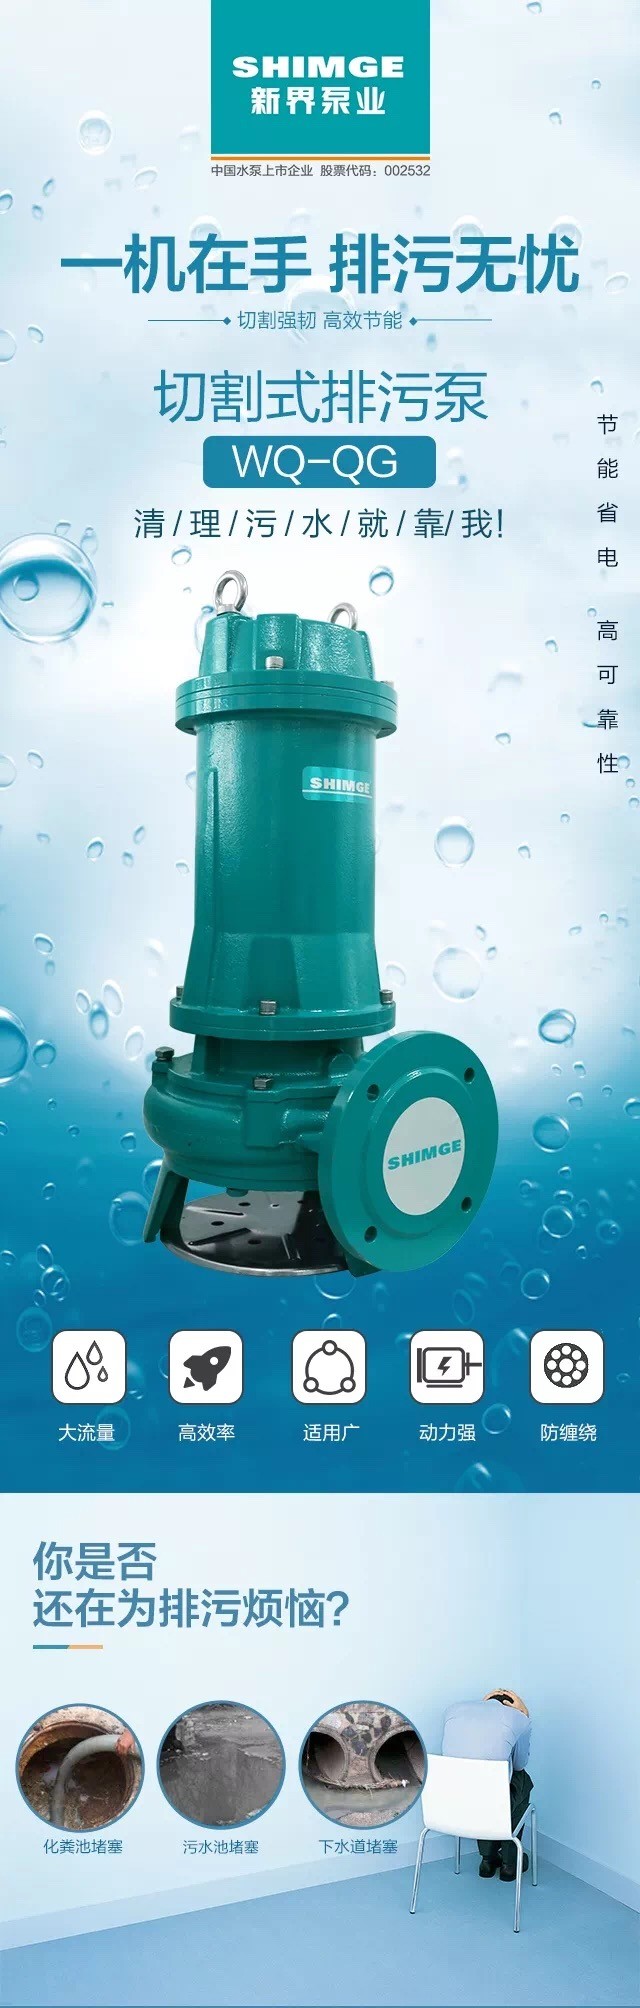 新界切割式污水泵工业污水潜水泵家用化粪池抽粪排污泵详情1